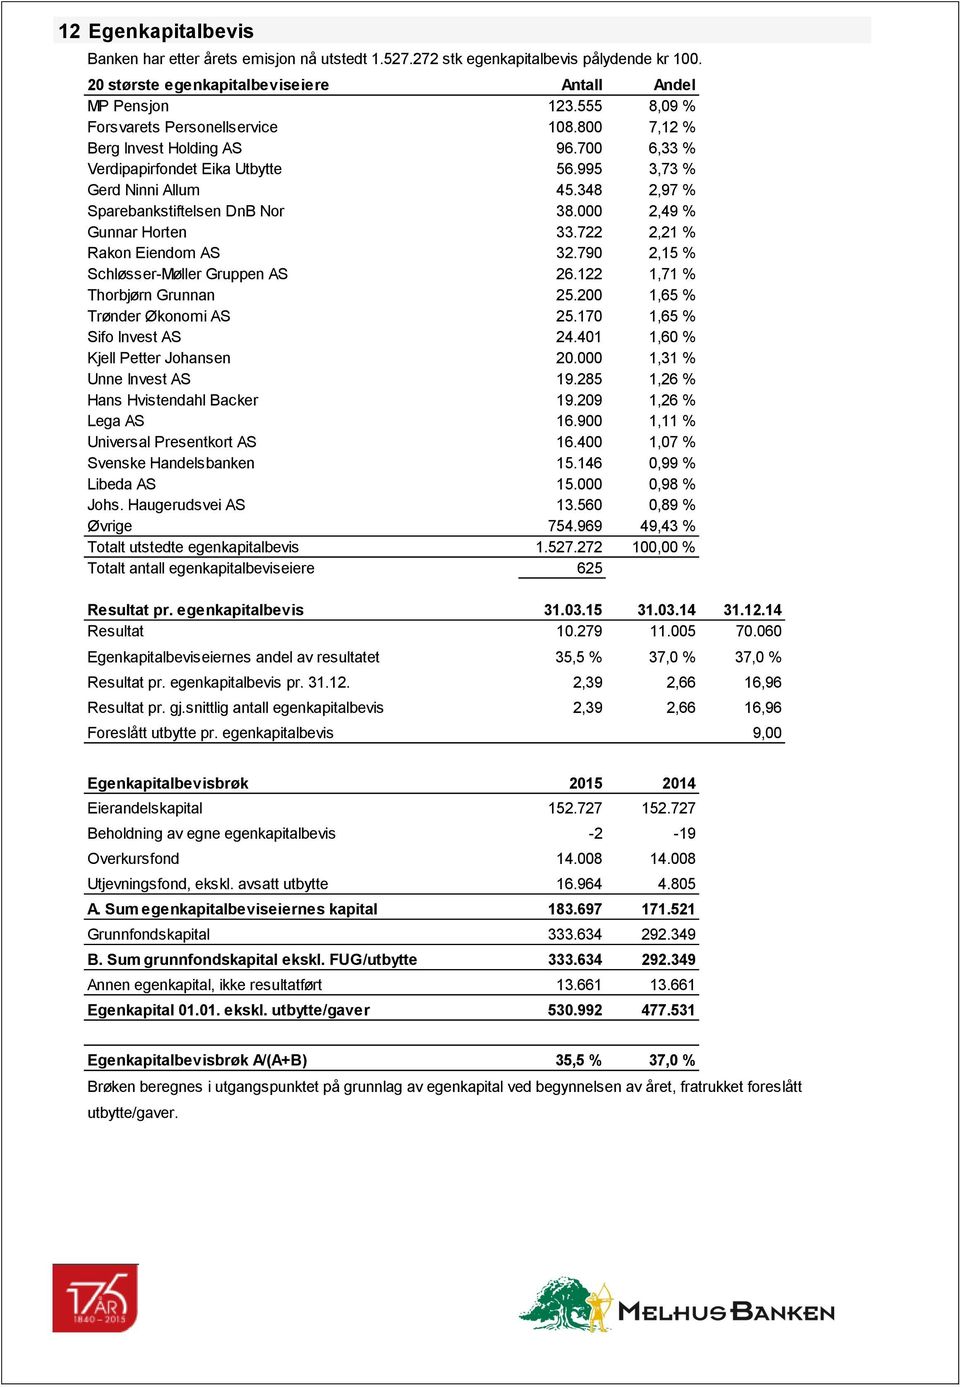 000 2,49 % Gunnar Horten 33.722 2,21 % Rakon Eiendom AS 32.790 2,15 % Schløsser-Møller Gruppen AS 26.122 1,71 % Thorbjørn Grunnan 25.200 1,65 % Trønder Økonomi AS 25.170 1,65 % Sifo Invest AS 24.